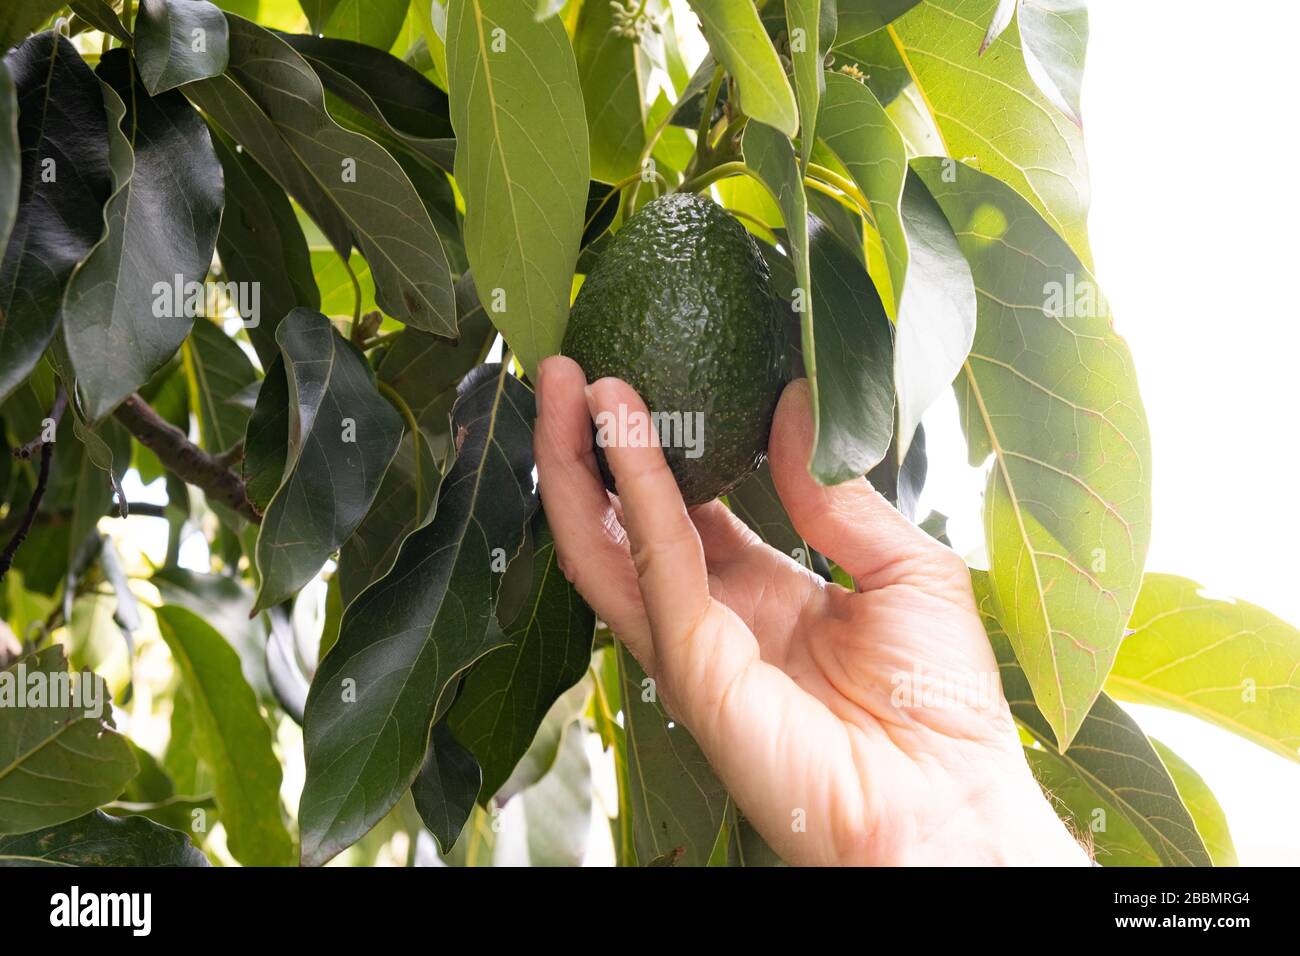 Pera di avocado fresco che cresce su albero con mano raggiungere per raccoglierlo. La raccolta di avocado sta diventando un raccolto importante. Foto Stock